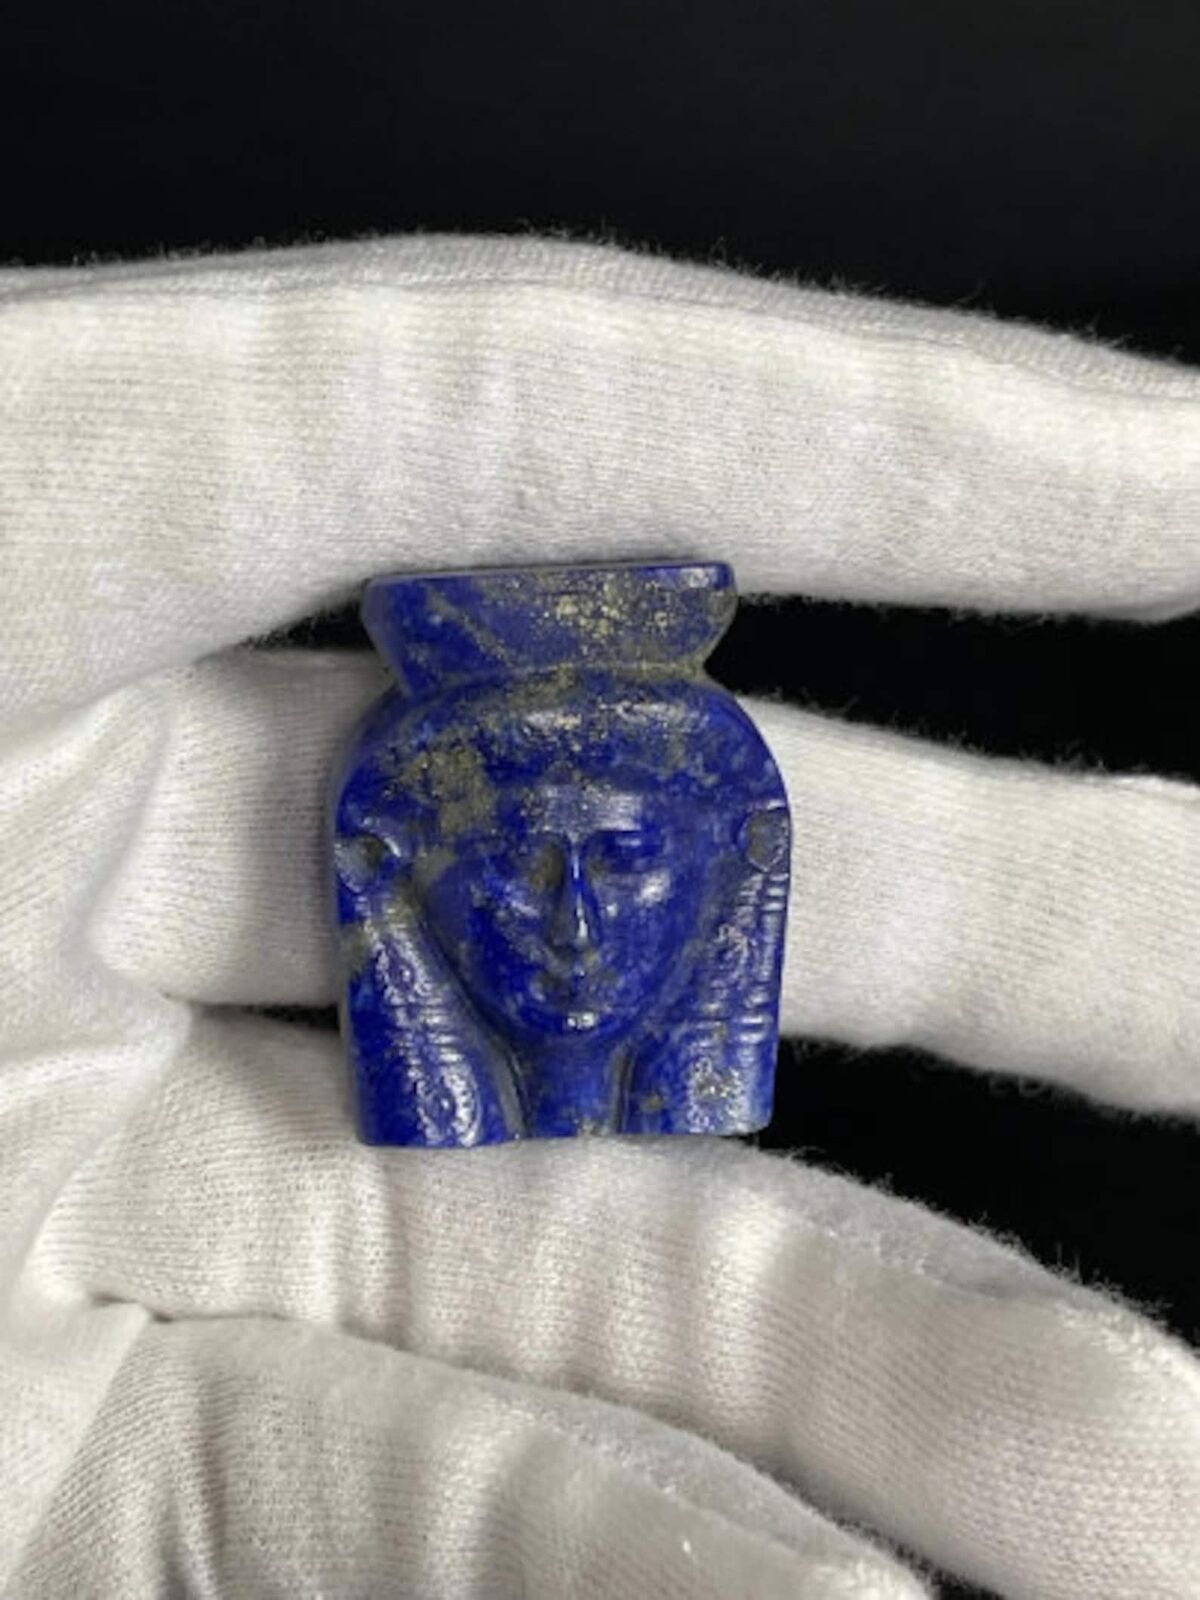 Lapis lazuli HATHOR figurine - hathor statuette - handmade in egypt